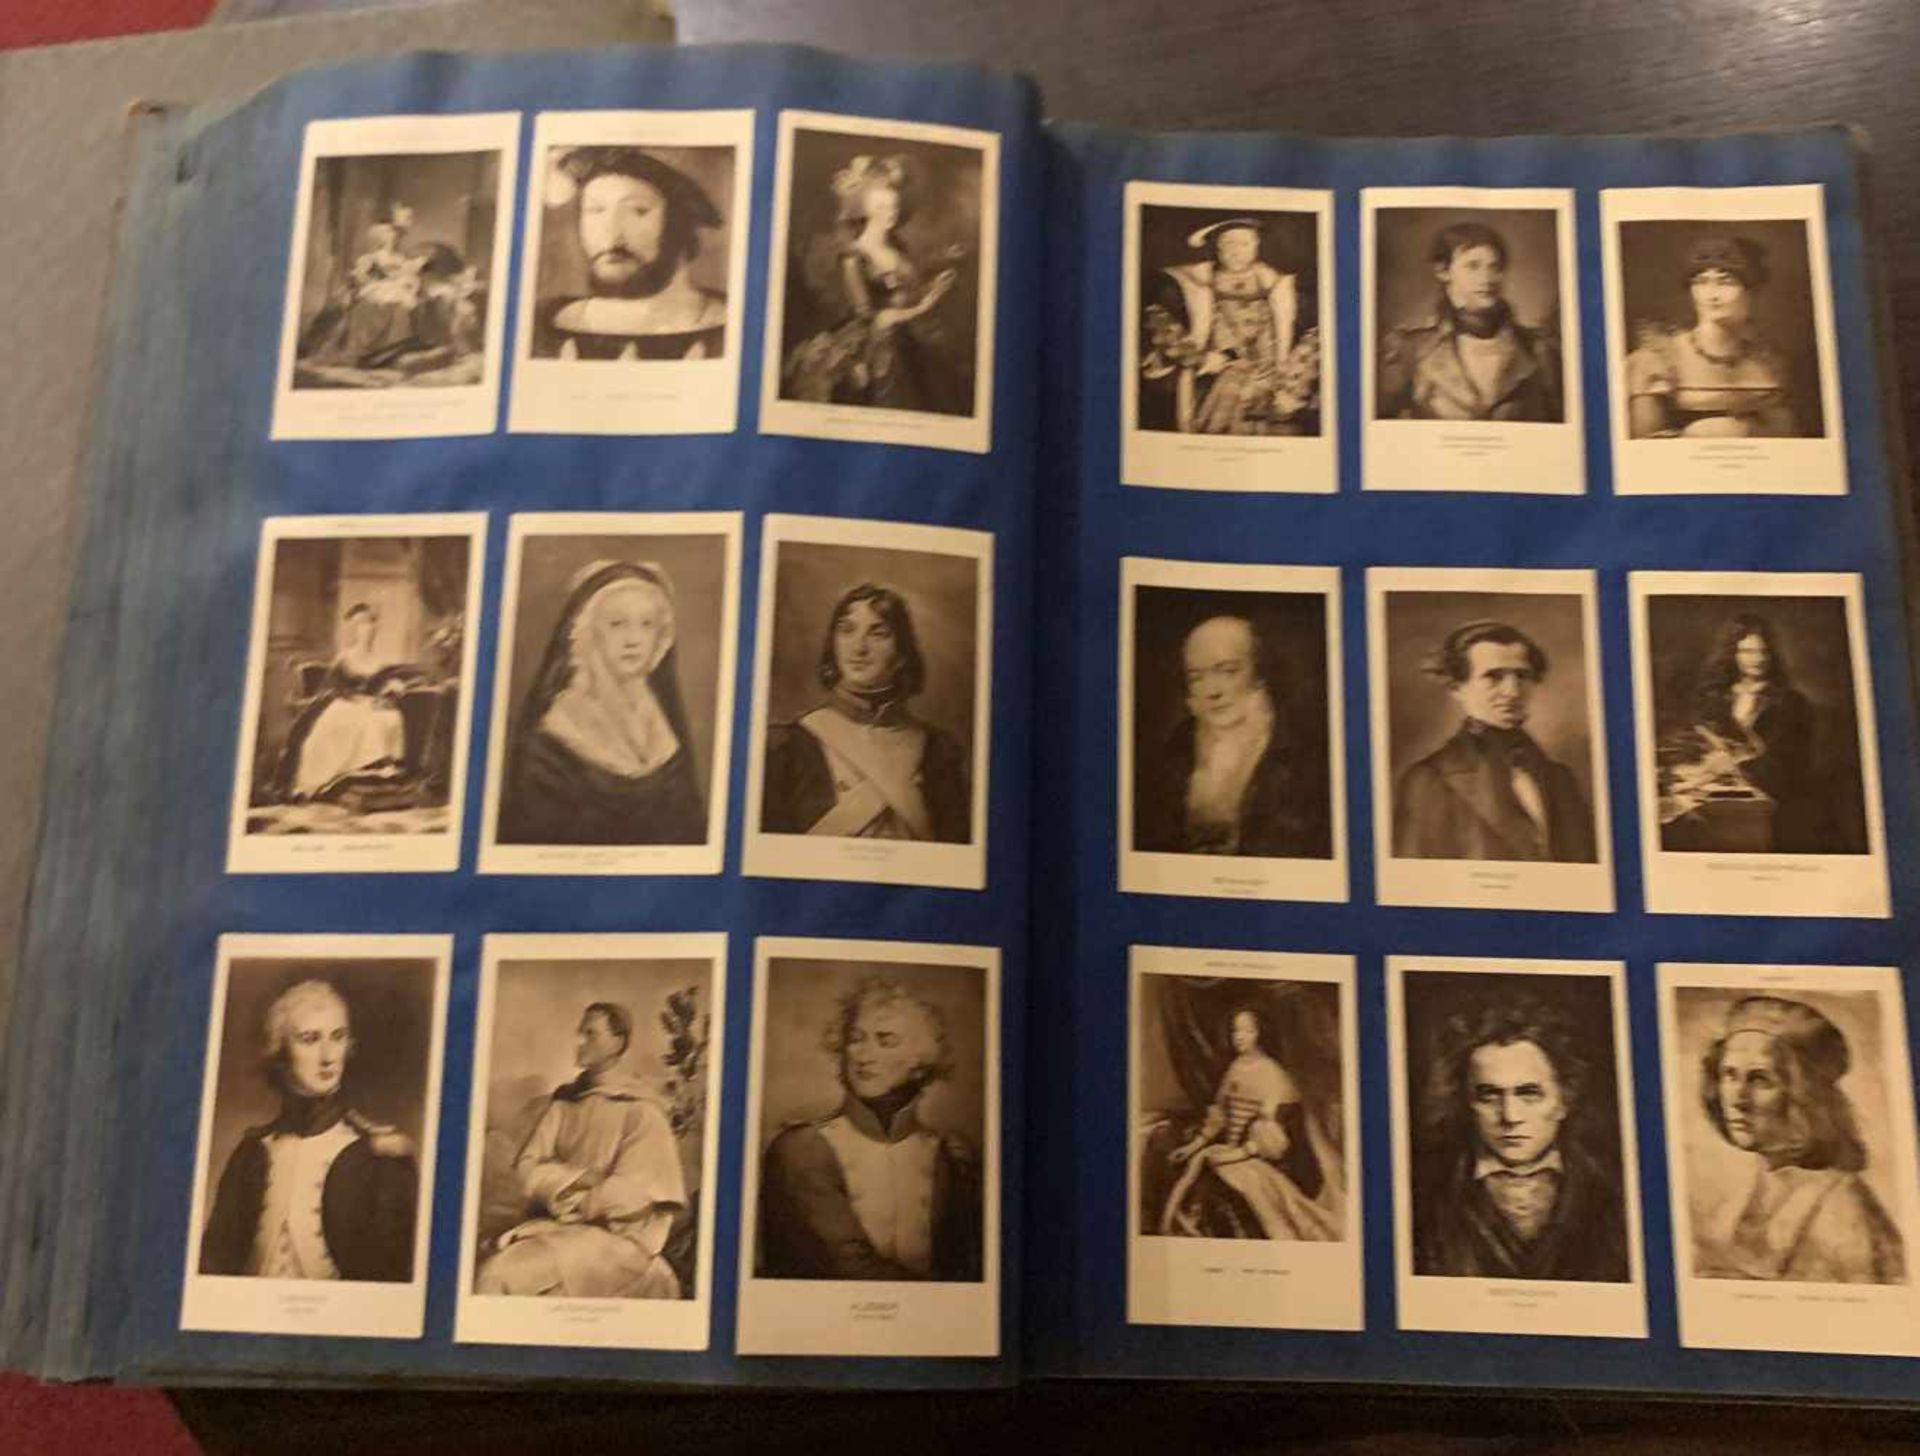 2 große Alben, Frankreich, mit ca. 2200 alten Postkarten. Kunsthistorische Motive, Personen, Orte, - Bild 8 aus 19